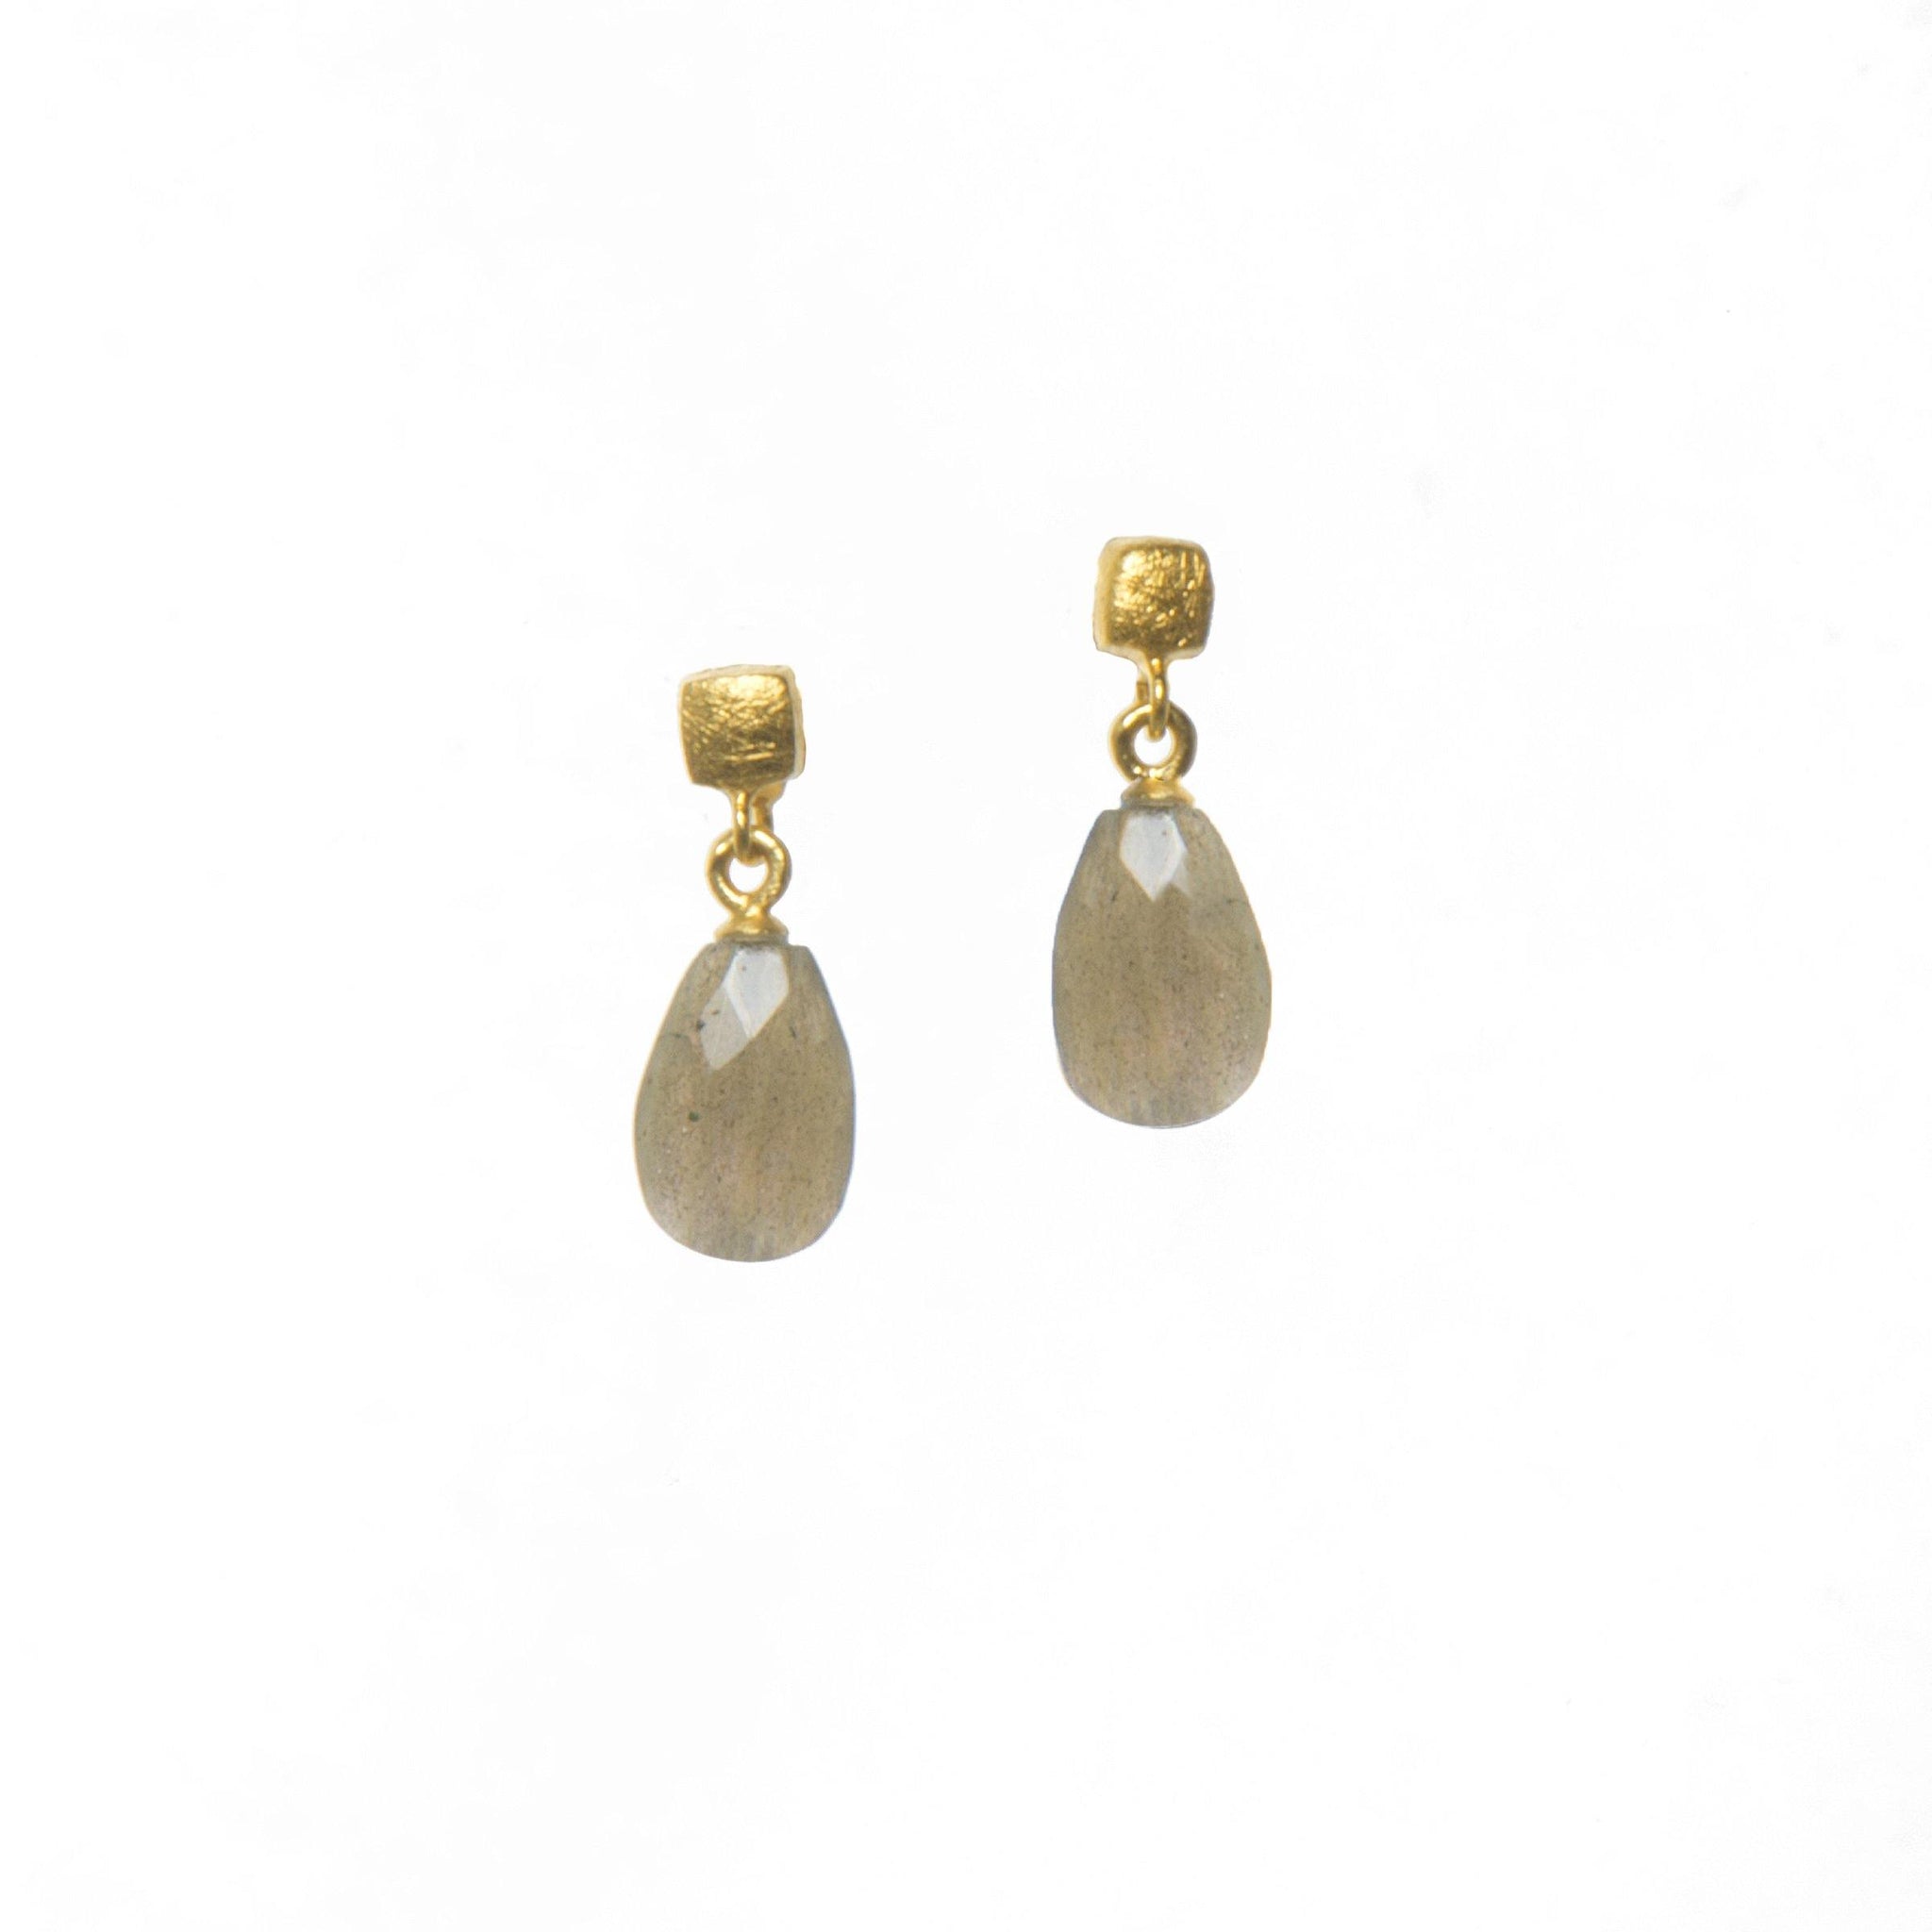 CUBE FACETED LABRADORITE EARRINGS FAIR TRADE 24K GOLD VERMEIL - Joyla Jewelry